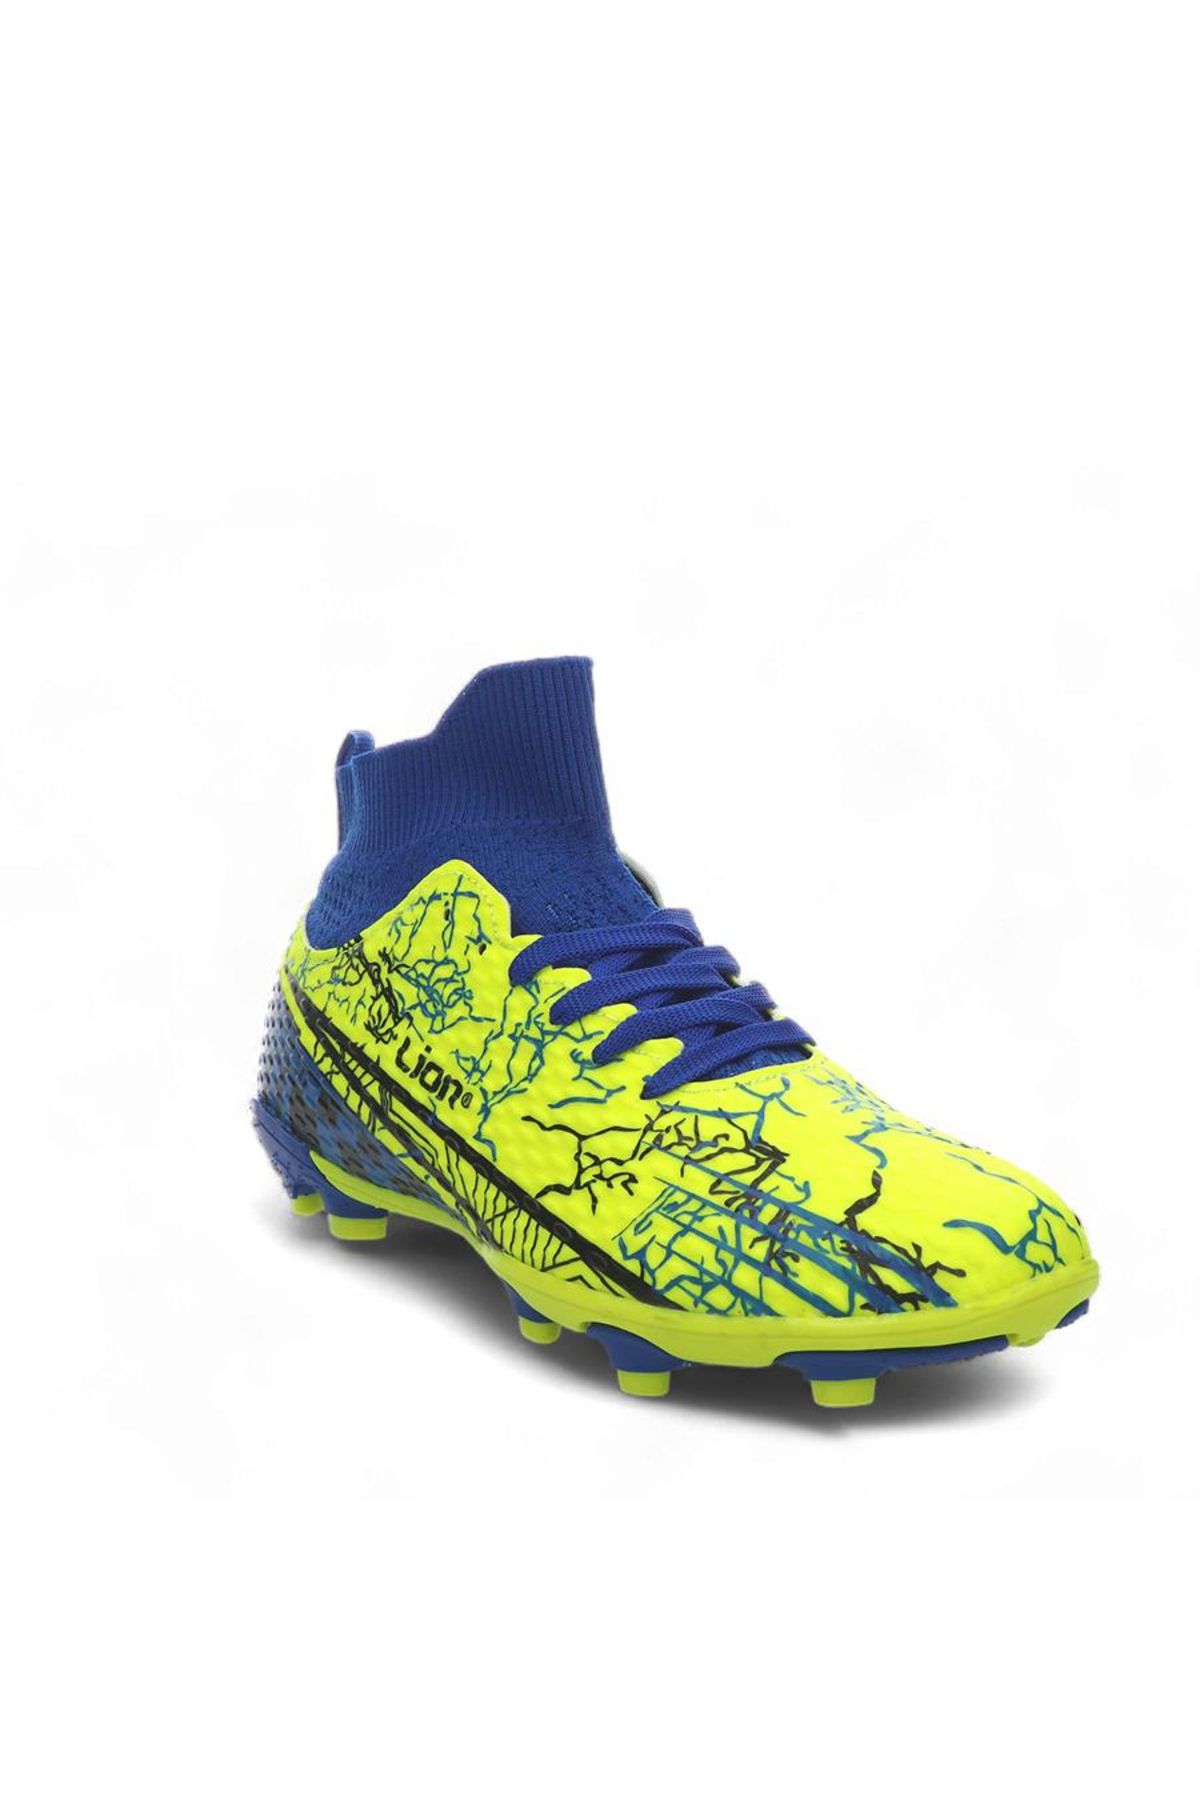 Lion Unisex Bilekli Çoraplı Krampon Futbol Ayakkabısı